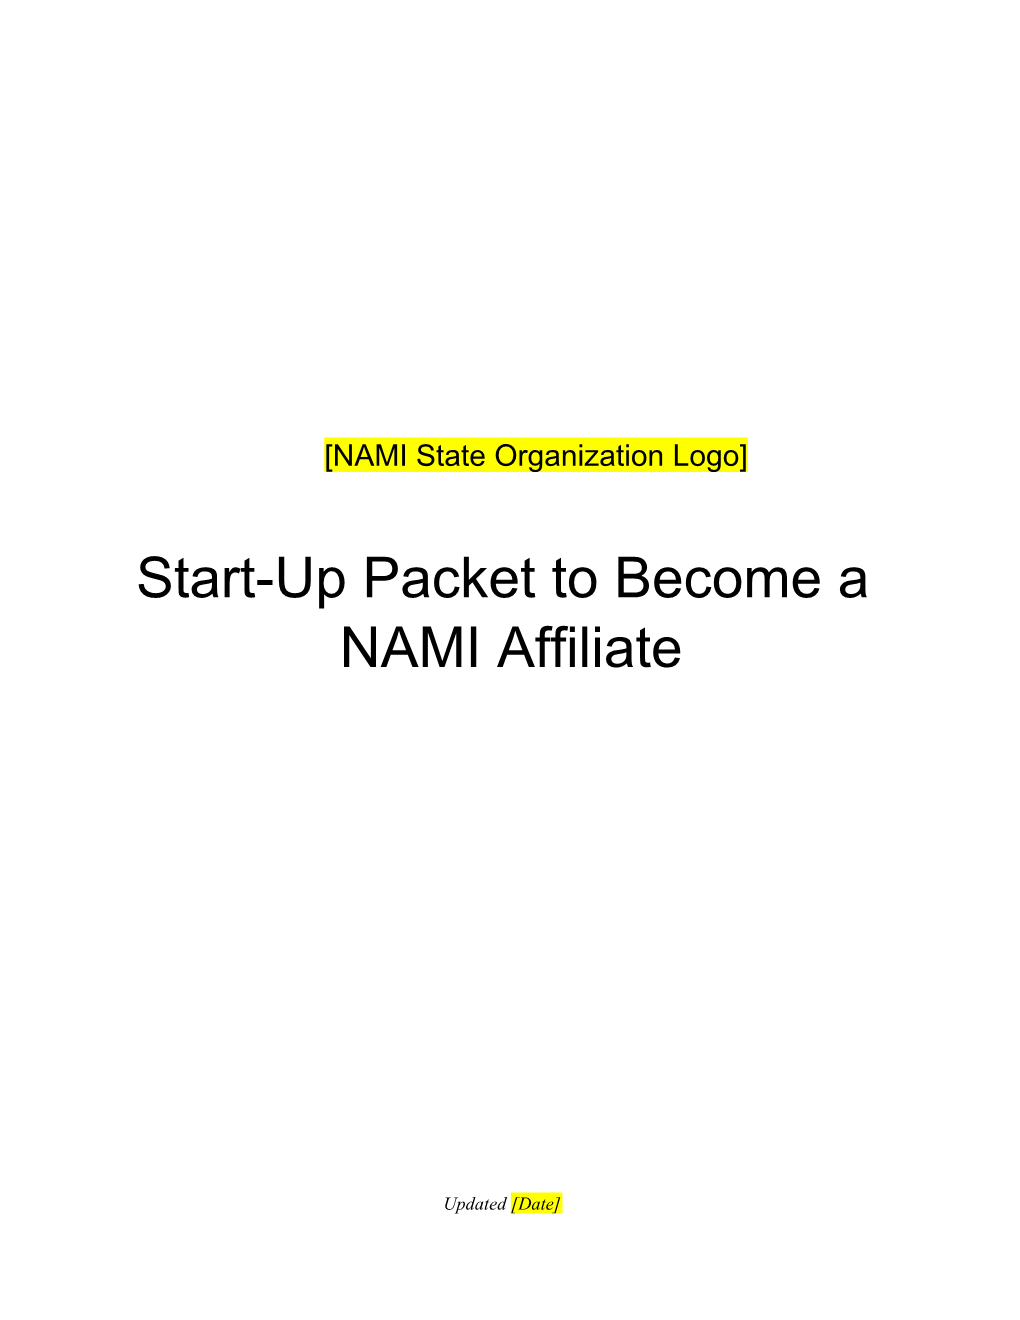 NAMI State Organization Logo